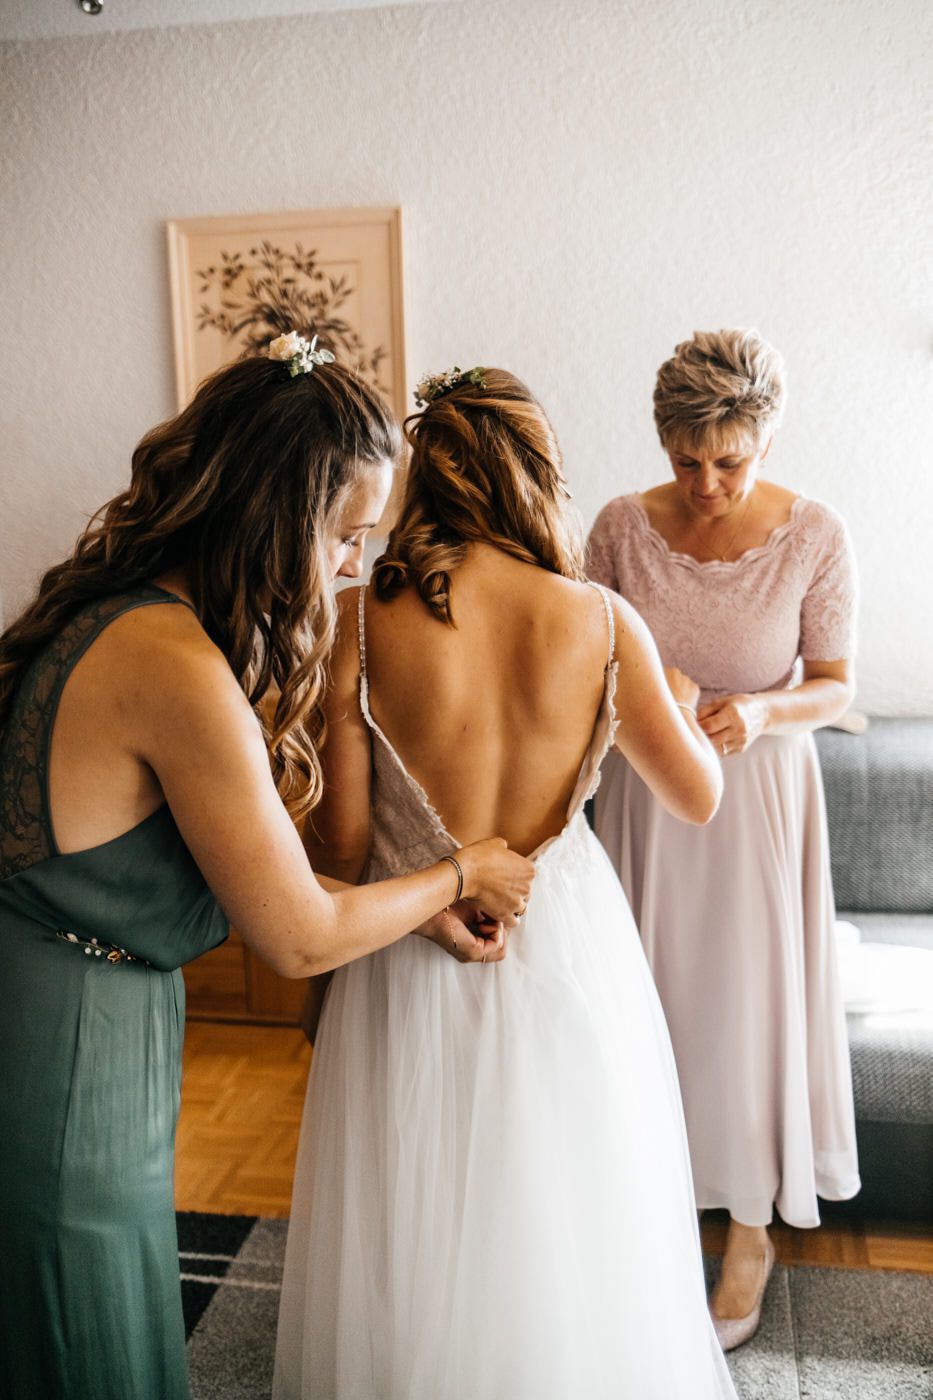 Hochzeitsfotograf hält den Moment fest, als die Braut angezogen wird.